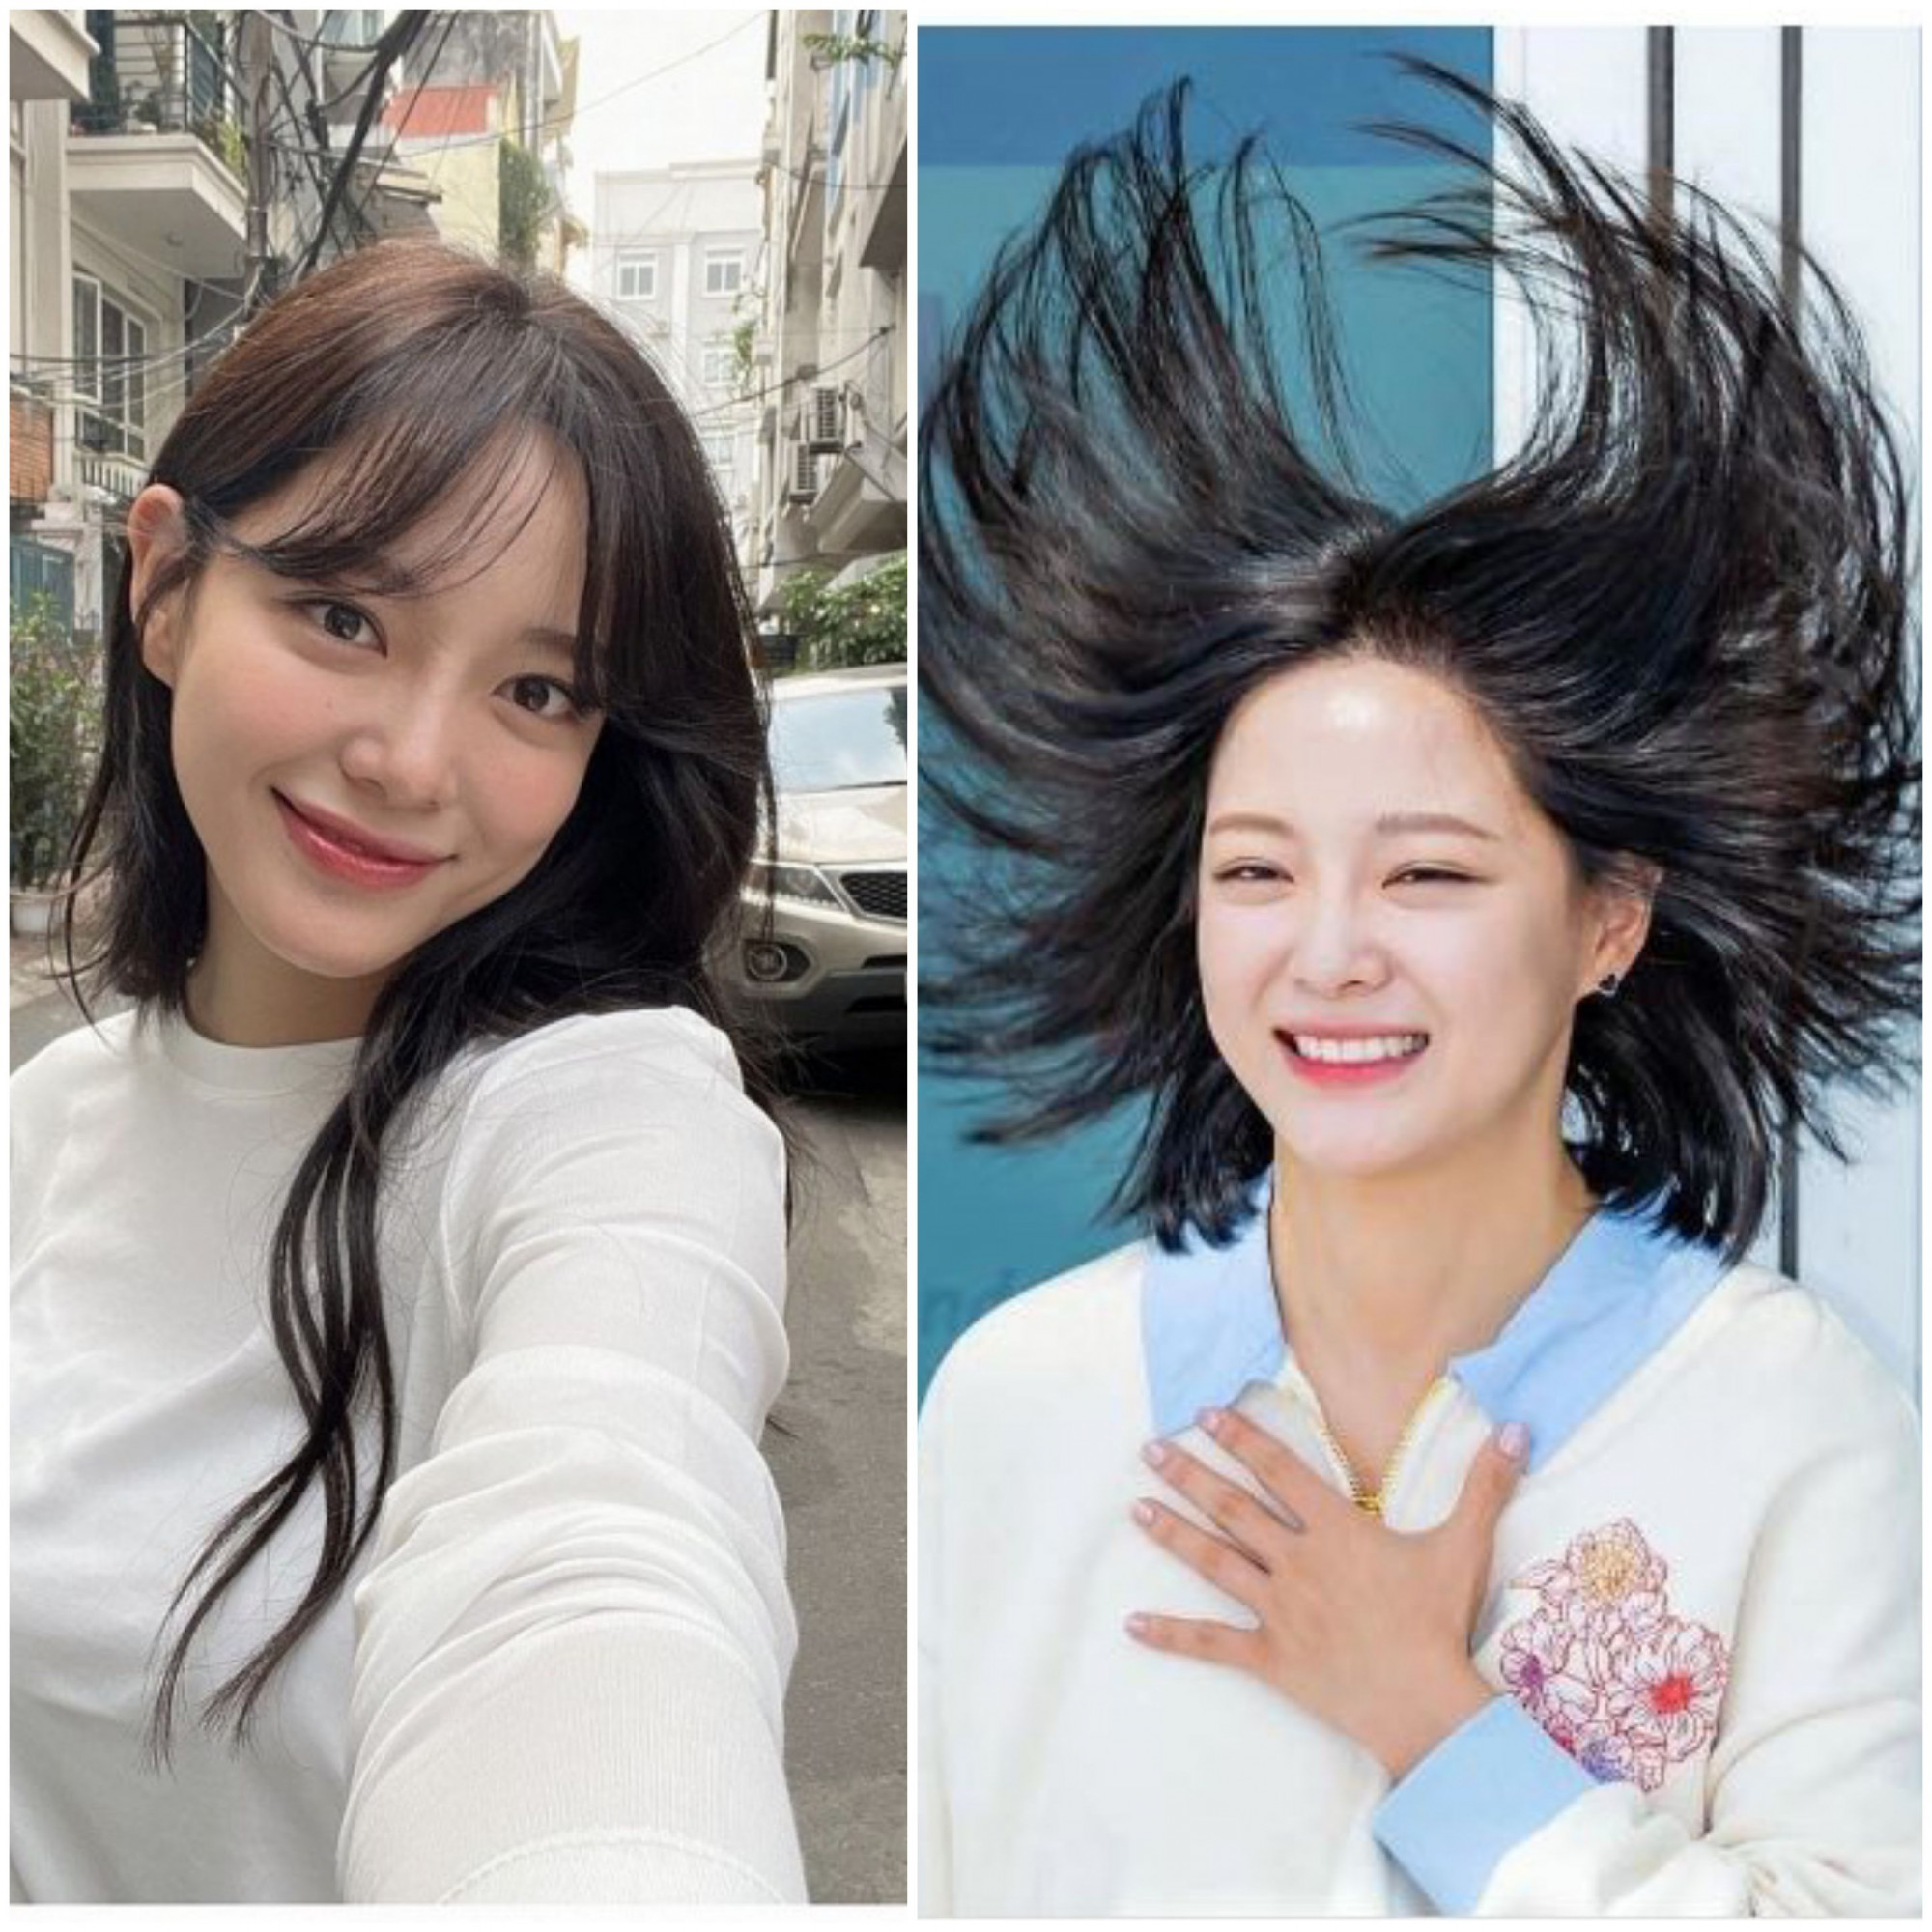 Kim Se Jeong cũng có “khoảnh khắc để đời” trong lần thả tóc thẳng tự nhiên. Cơn gió mạnh đã thổi tóc nữ diễn viên bay tung tóe, thậm chí tạo nên một hình vòng cung khá lạ mắt. Hình ảnh dở khóc dở cười này của Se Jeong đã được lan truyền mạnh mẽ trên mạng xã hội.